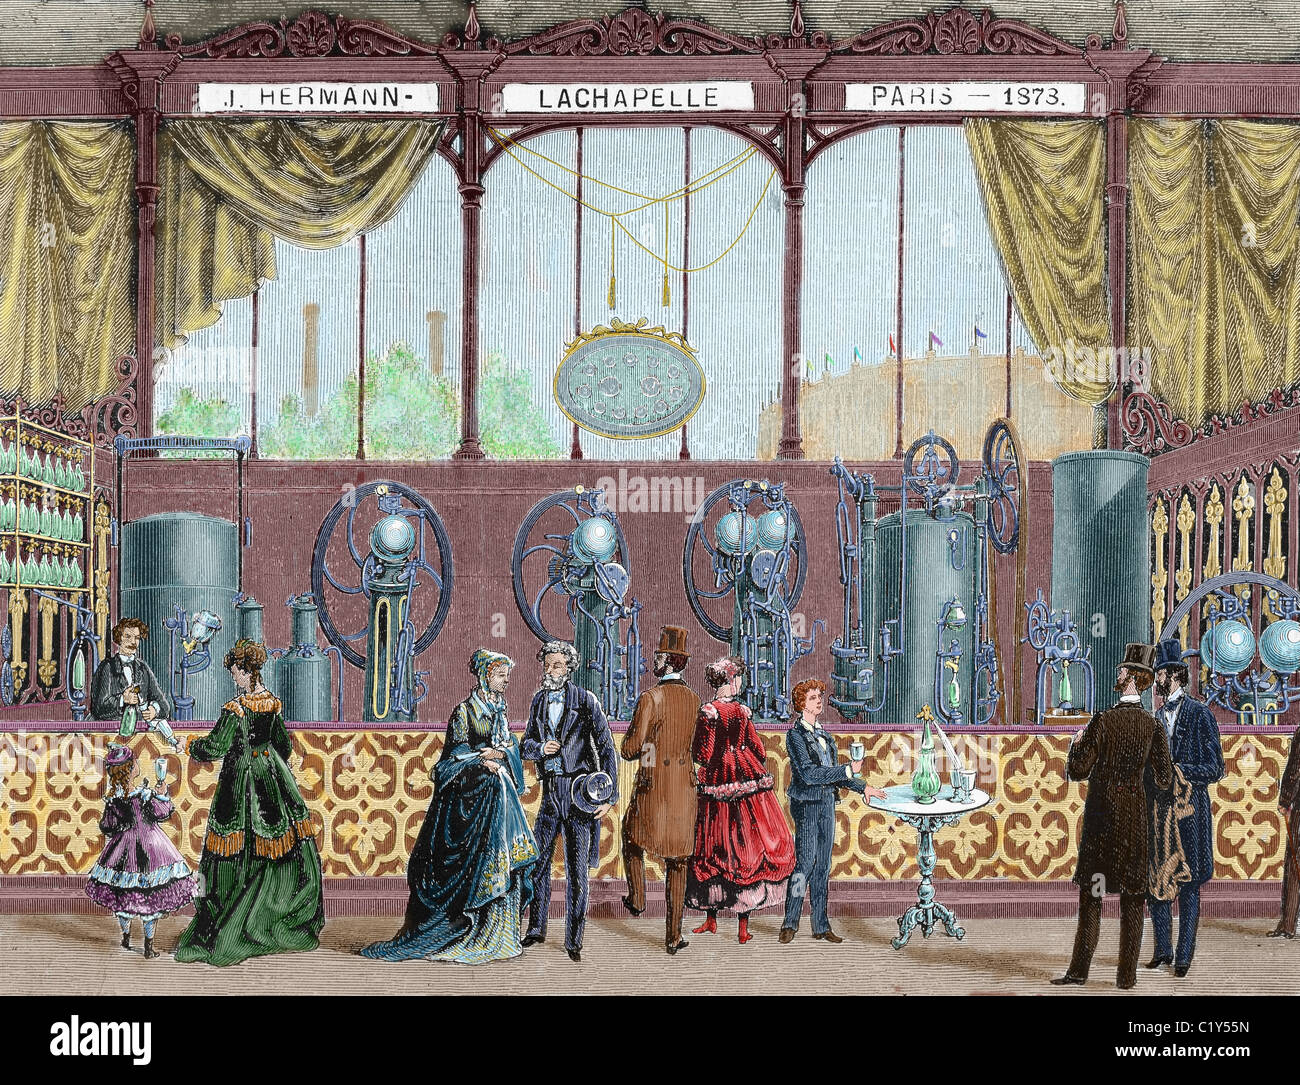 Esposizione Universale di Parigi (1878). Installazione da J. Hermann Lachapelle, apparecchiature continue maker per la produzione di soft Foto Stock